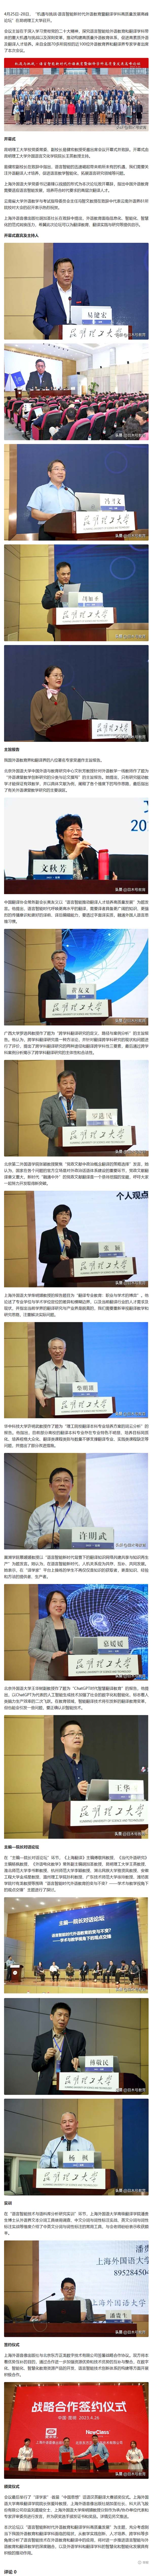 东方正龙与上海外语音像出版社达成战略合作